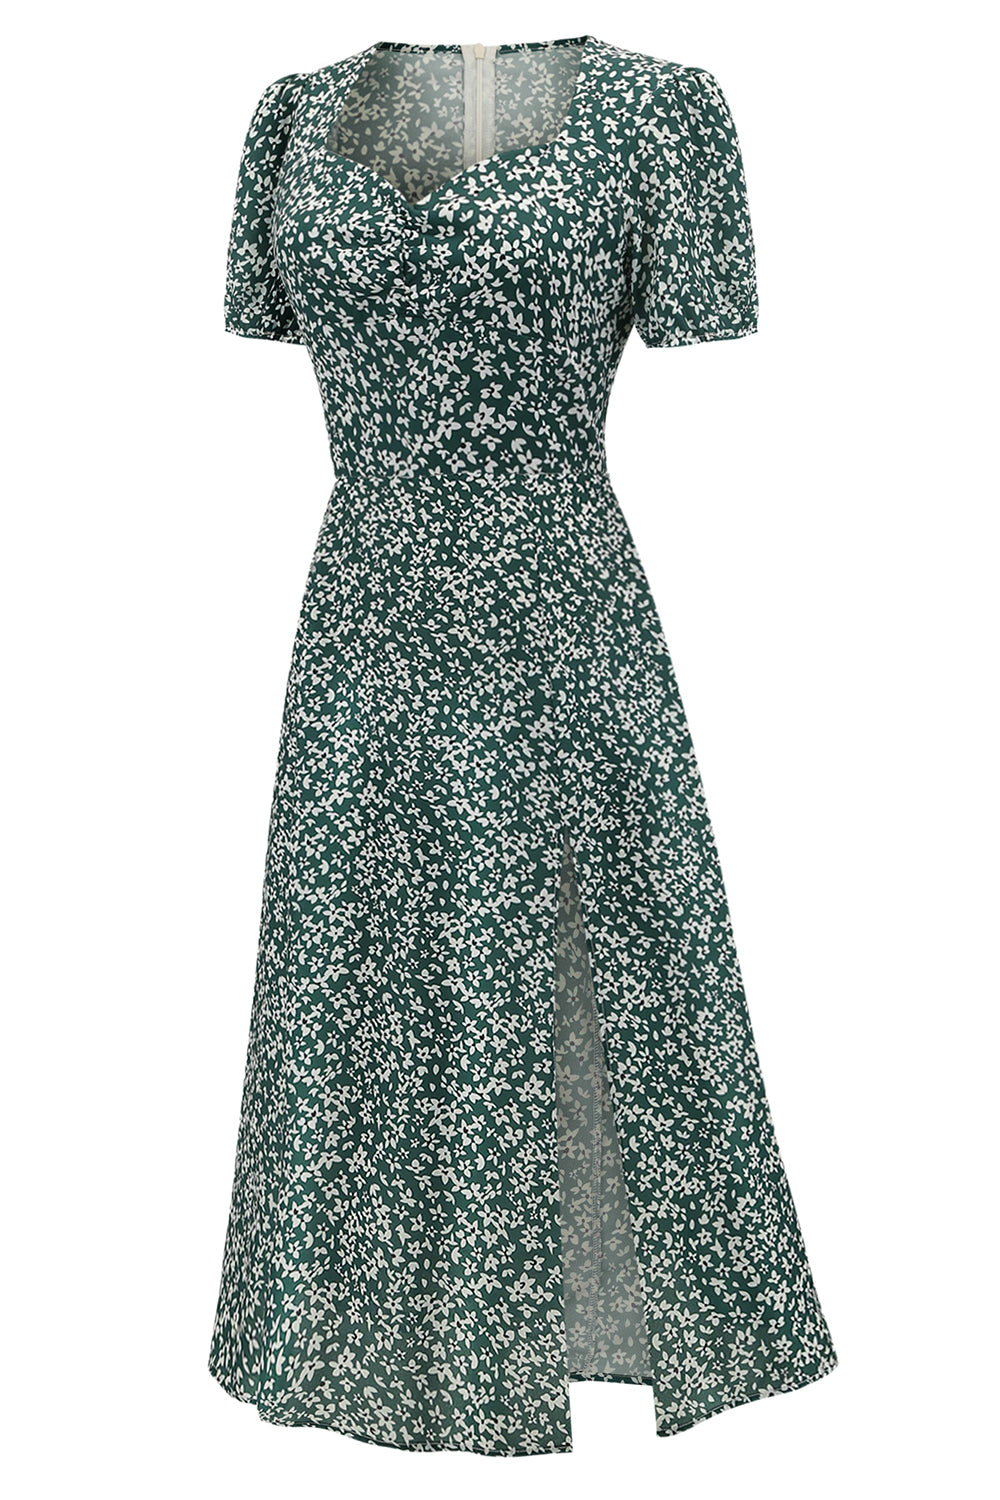 V Neck Floral 1950s Vintage Dress